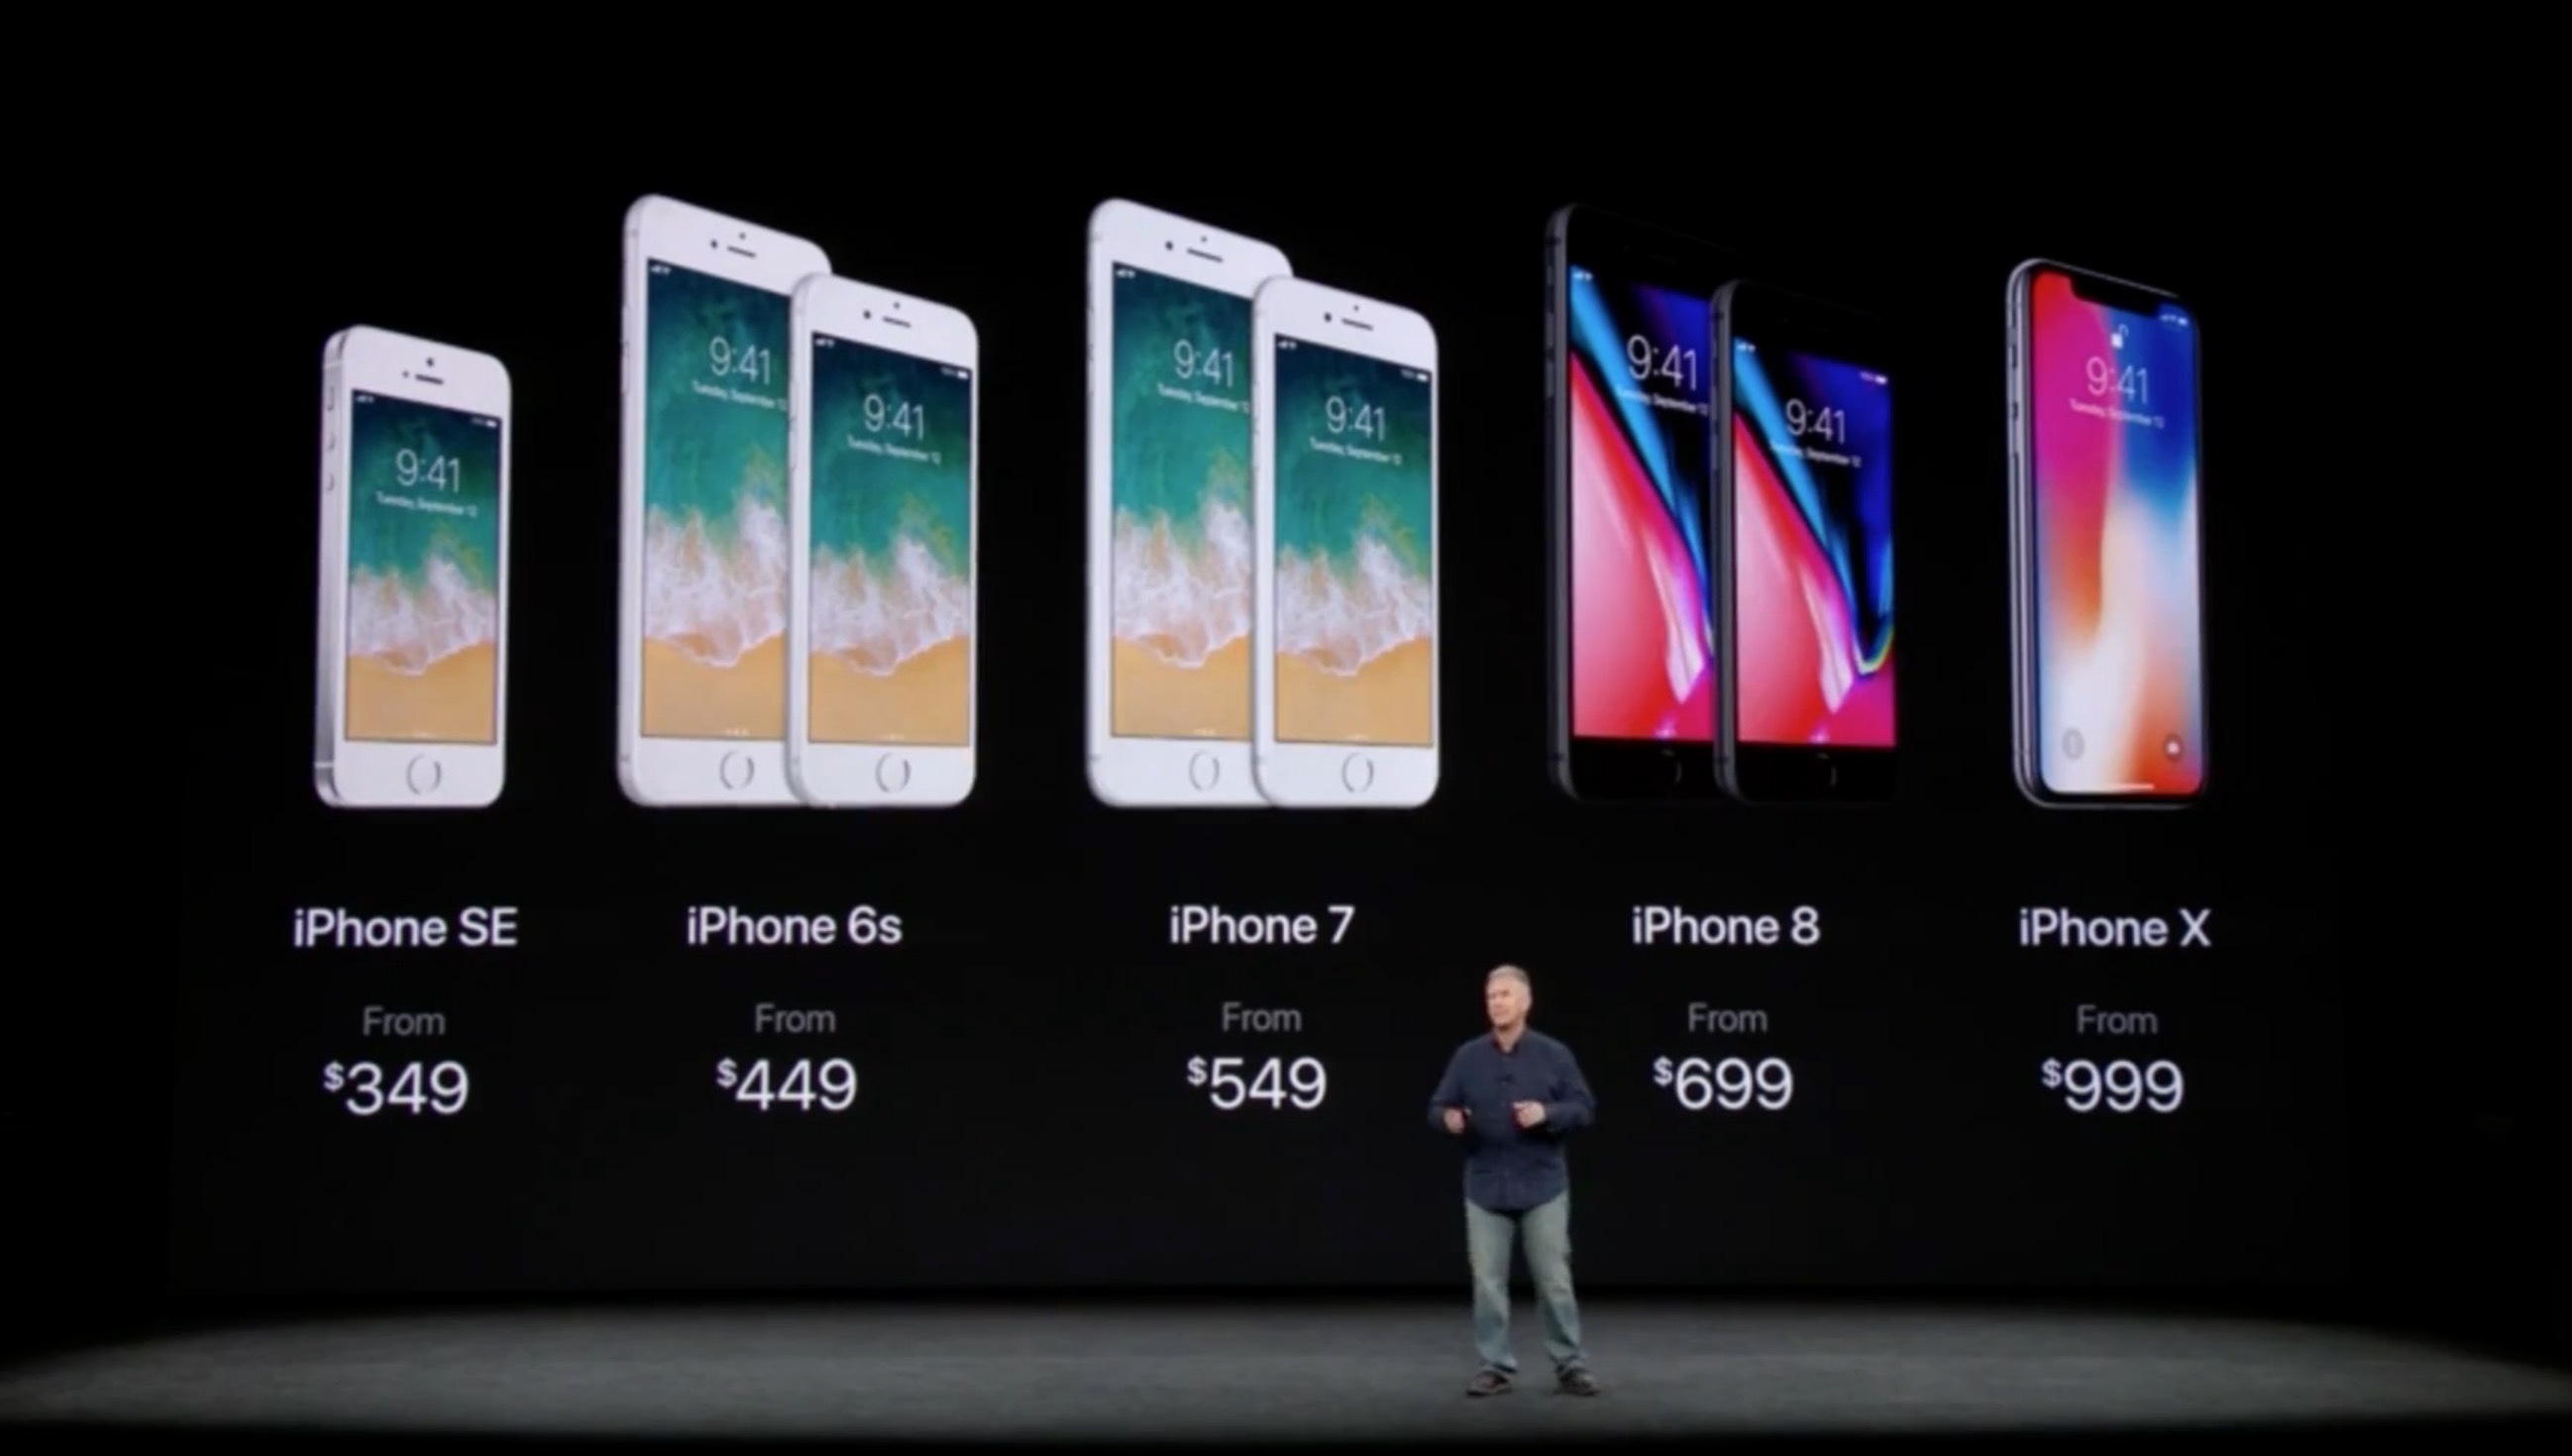 iPhone X将近1万的售价,苹果赚得比iPhone 7少?_凤凰科技